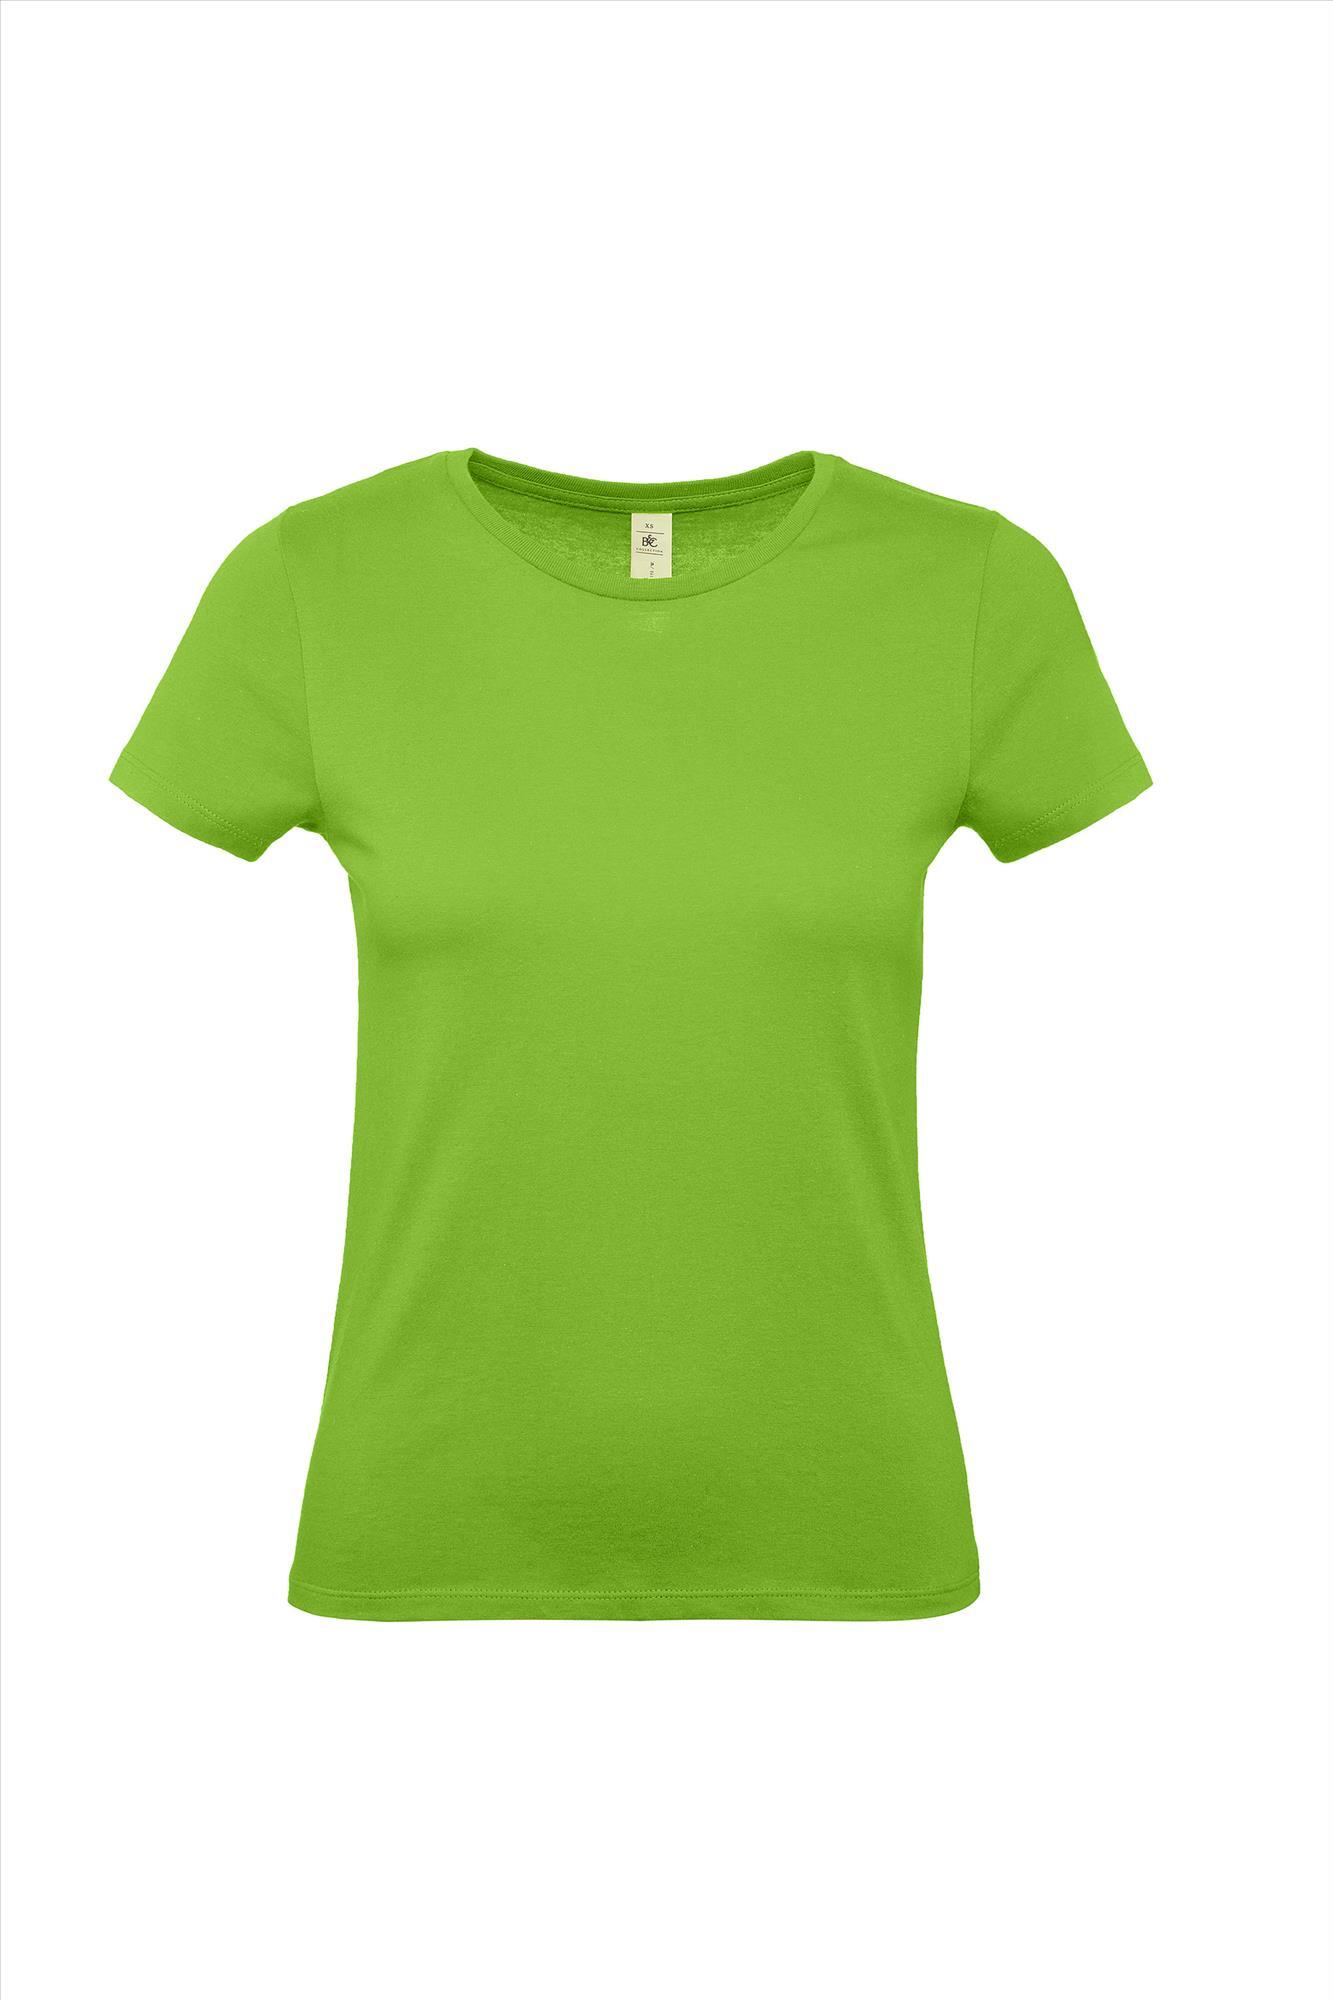 Modern T-shirt voor haar dames shirt orchidee groen